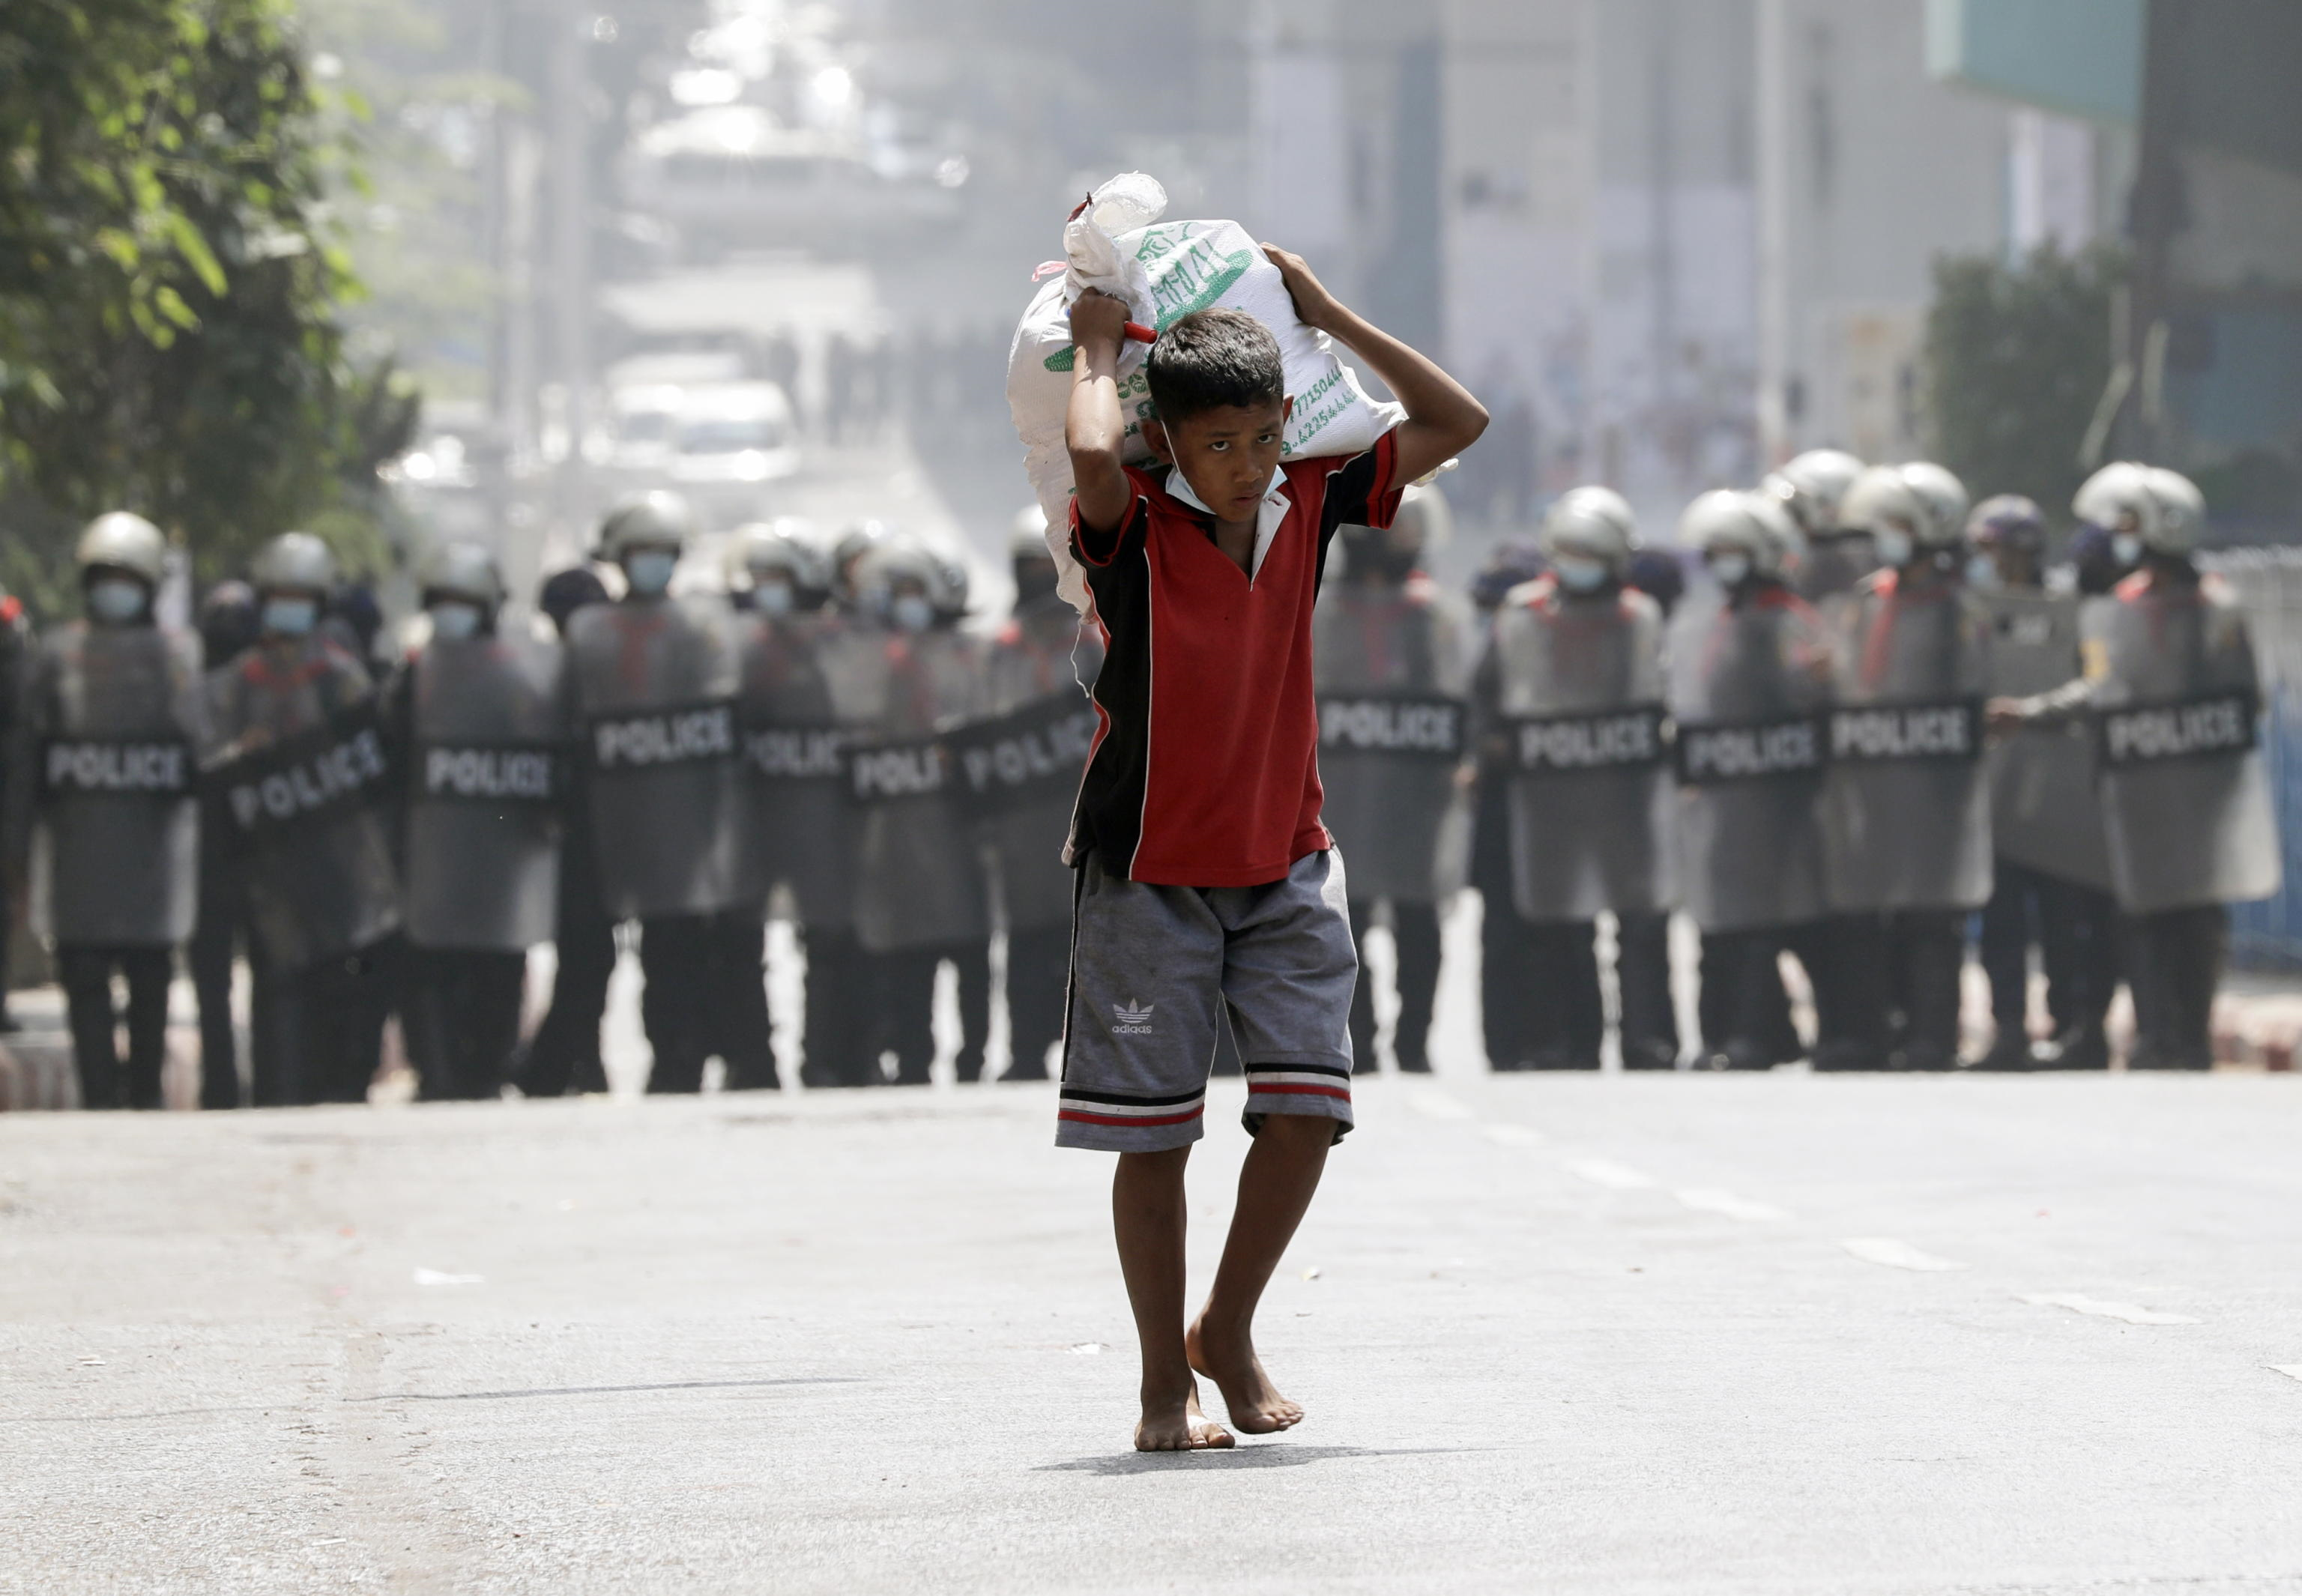 Un ragazzo trasporta un sacco di riso davanti agli agenti di polizia anti-sommossa che bloccano una strada durante una protesta contro il colpo di stato militare, a Yangon, Myanmar, 26 febbraio 2021.